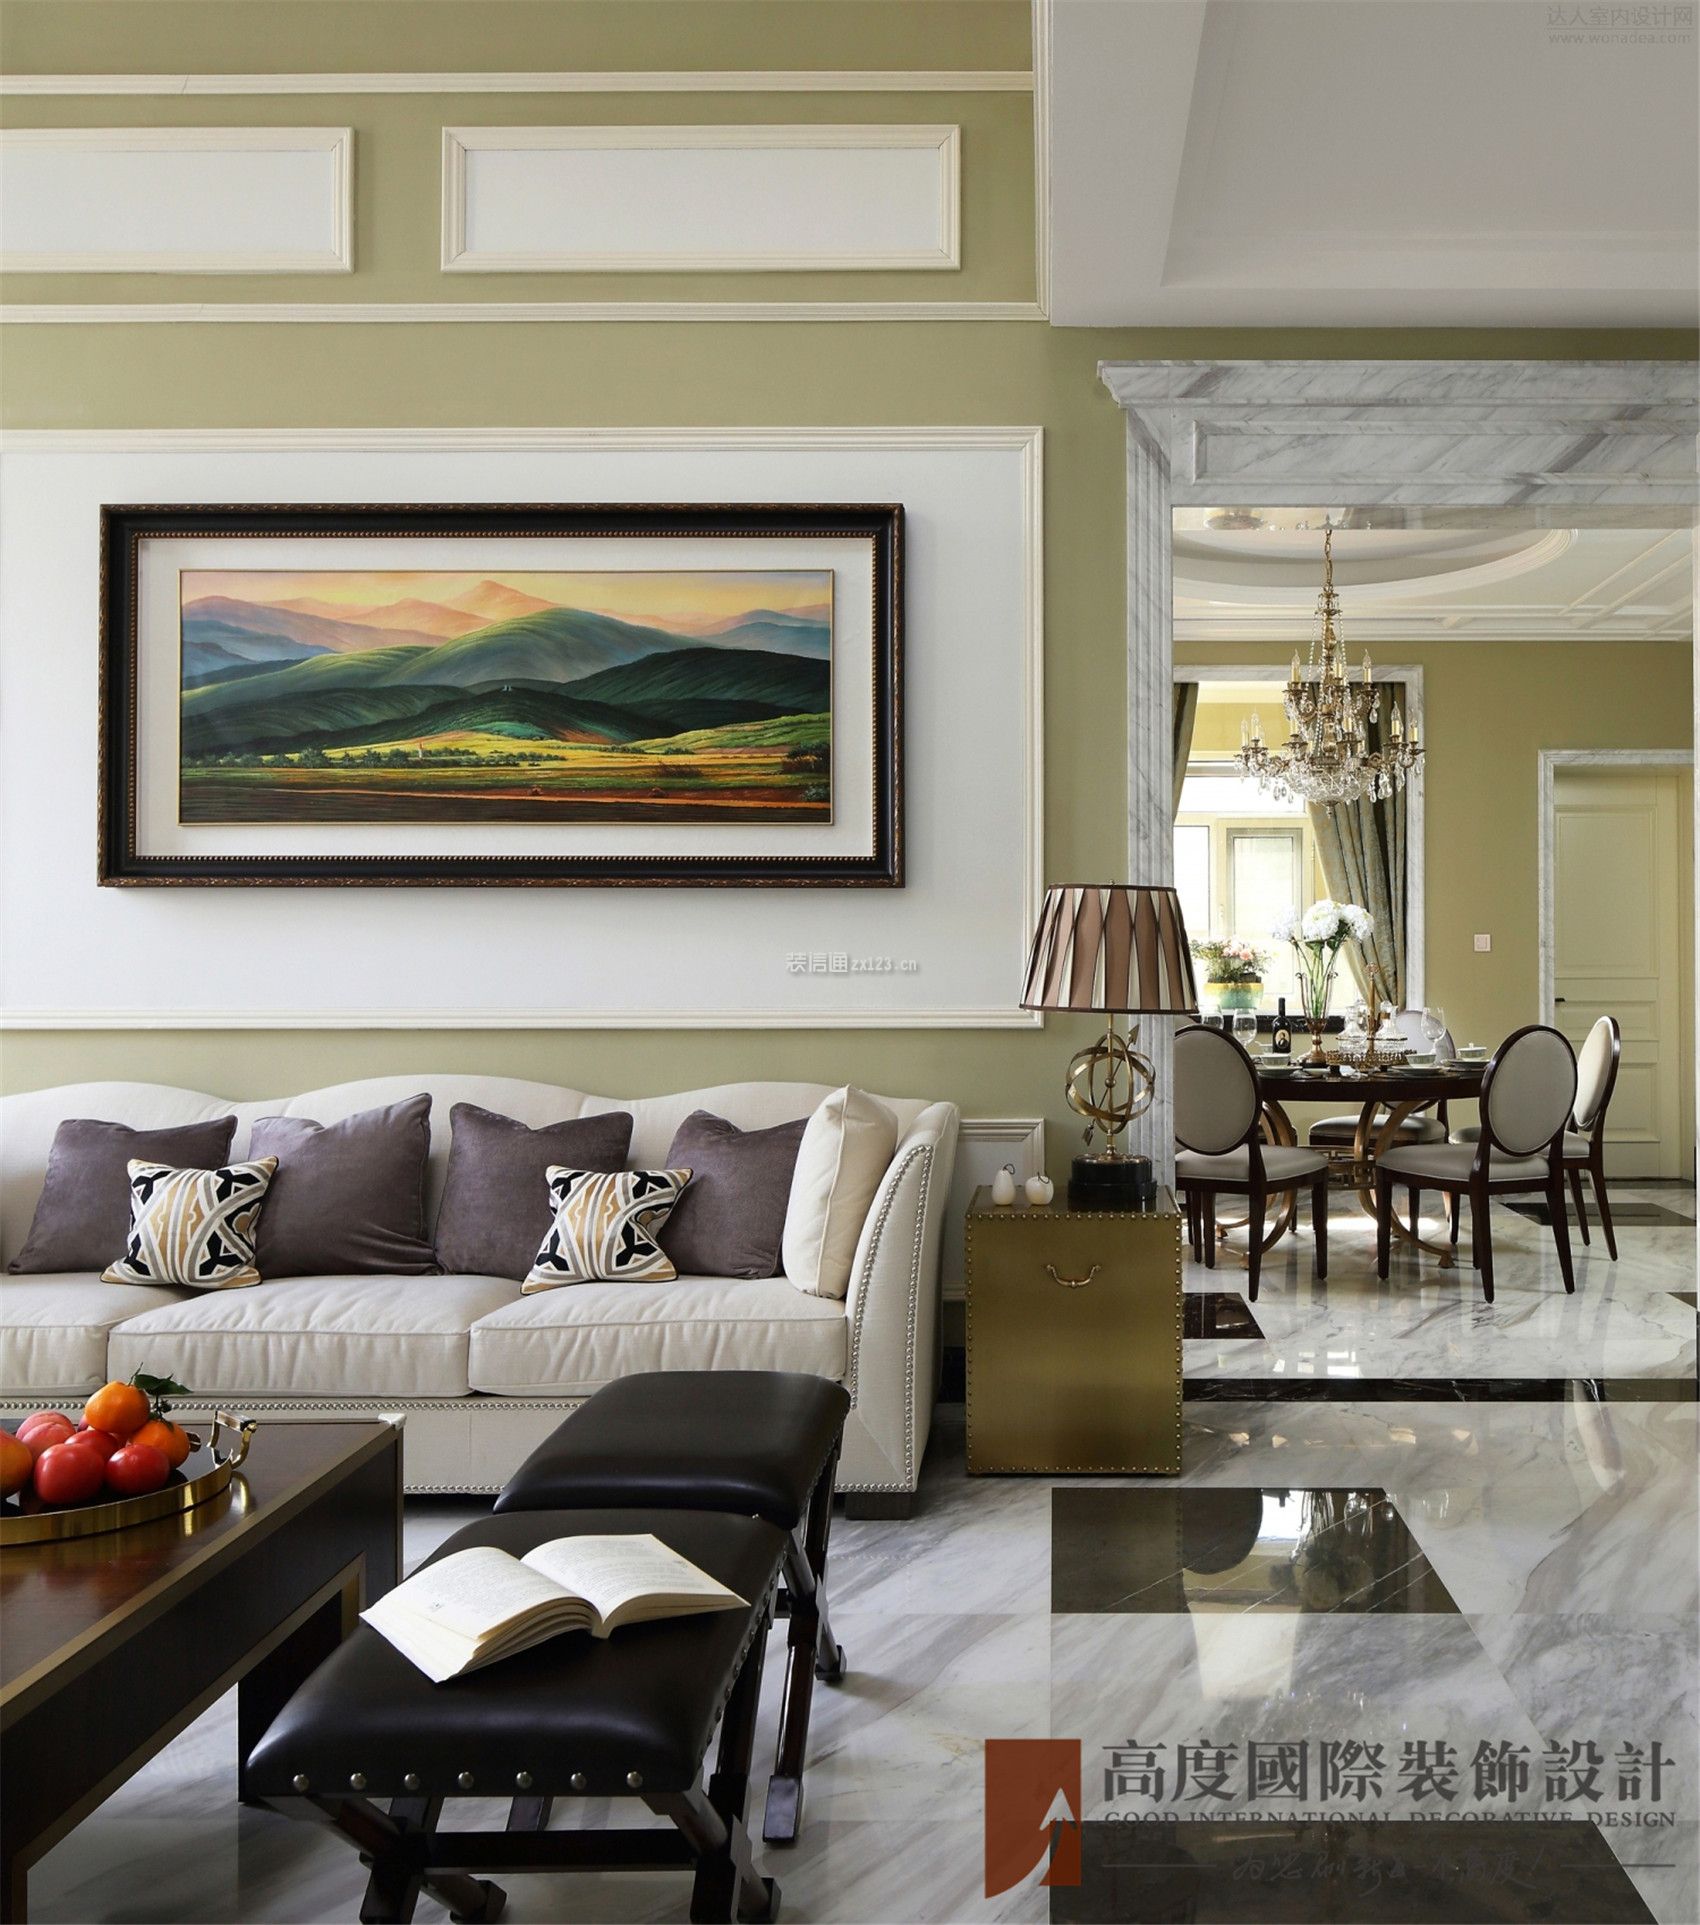 美式风格客厅效果图 美式风格客厅家具